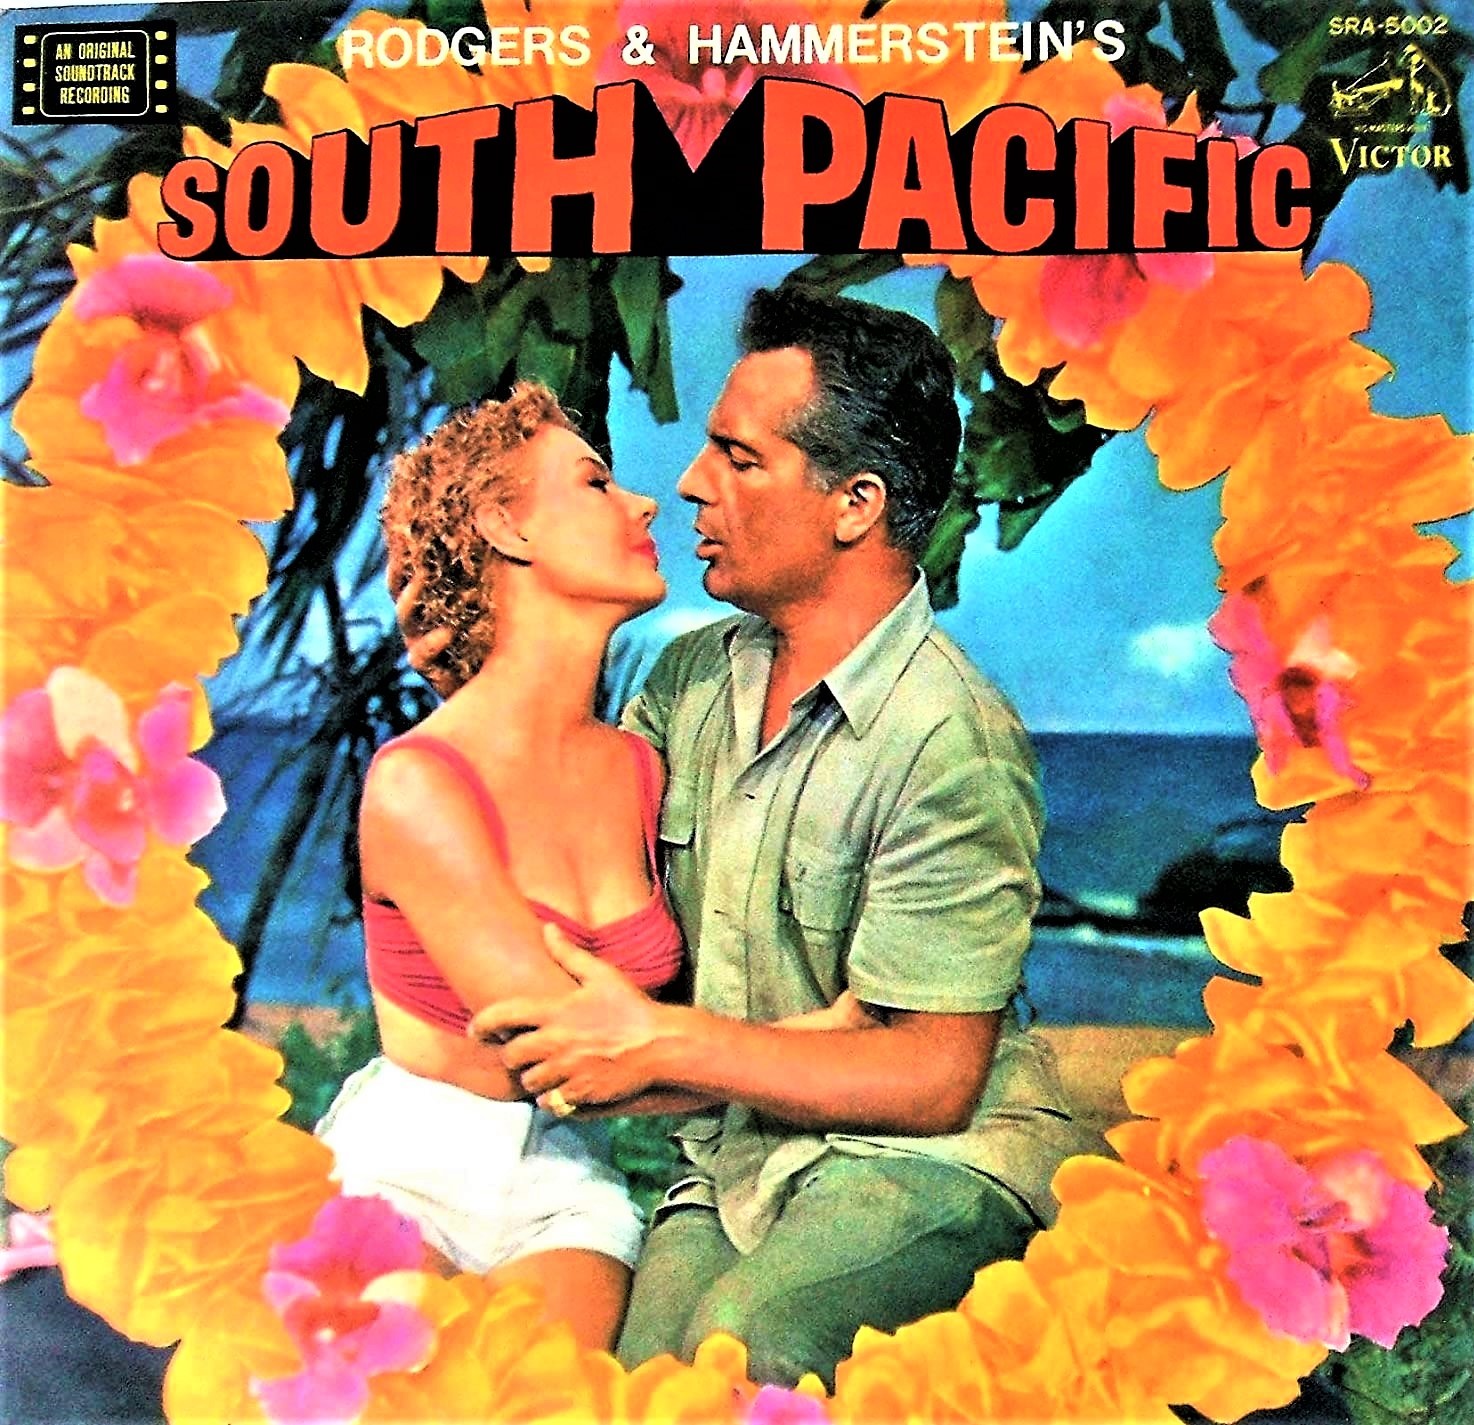 映画版『南太平洋』（1958年）のサントラLP。現在は、輸入盤CDやダウンロードで購入可だ。